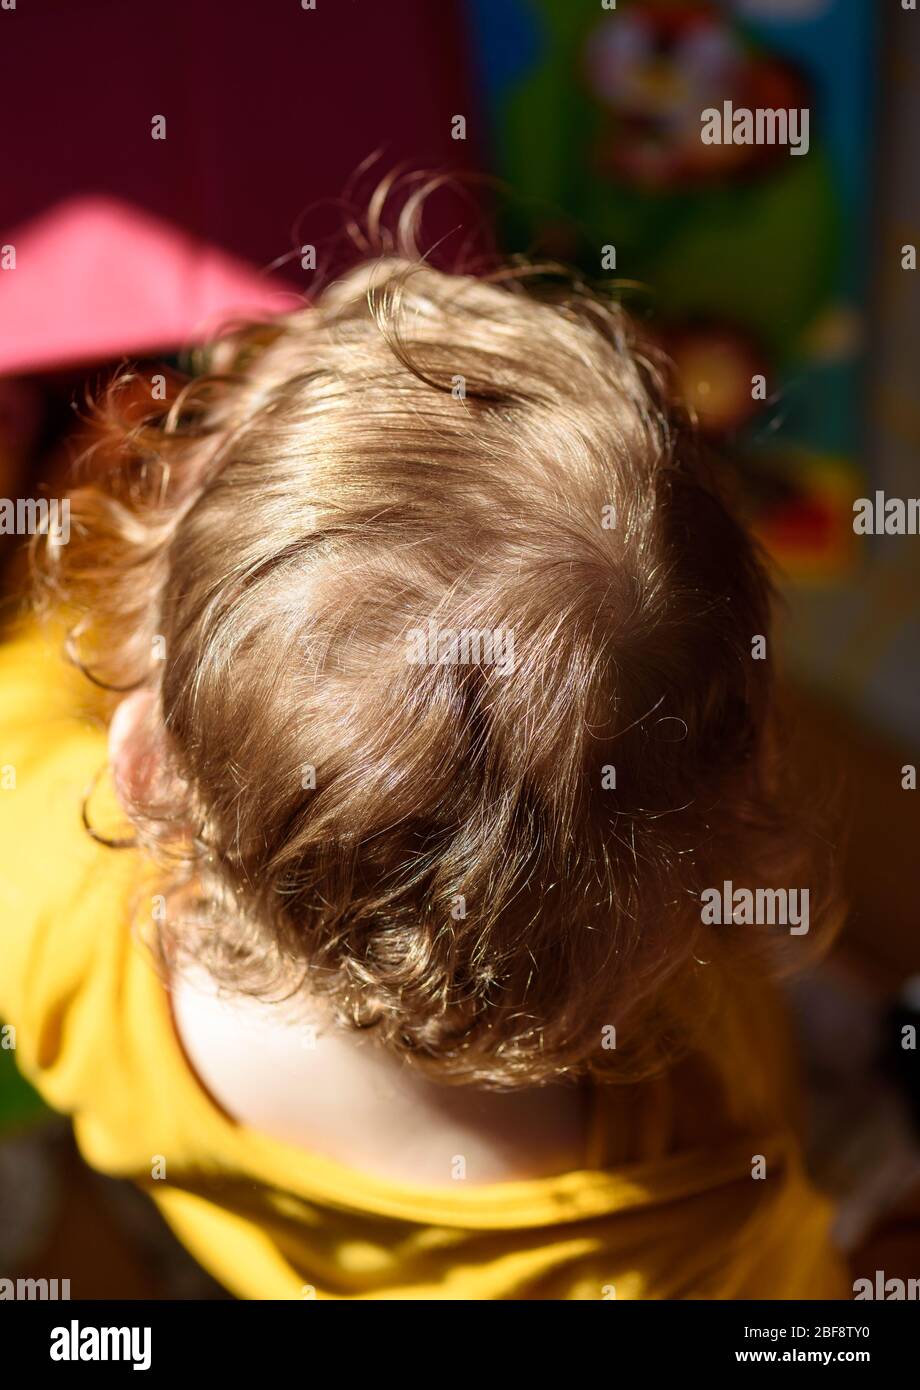 Draufsicht eines Erdbeerblonden, lockigen kaukasischen Kindes, das vom Sonnenlicht beleuchtet wird. Stockfoto